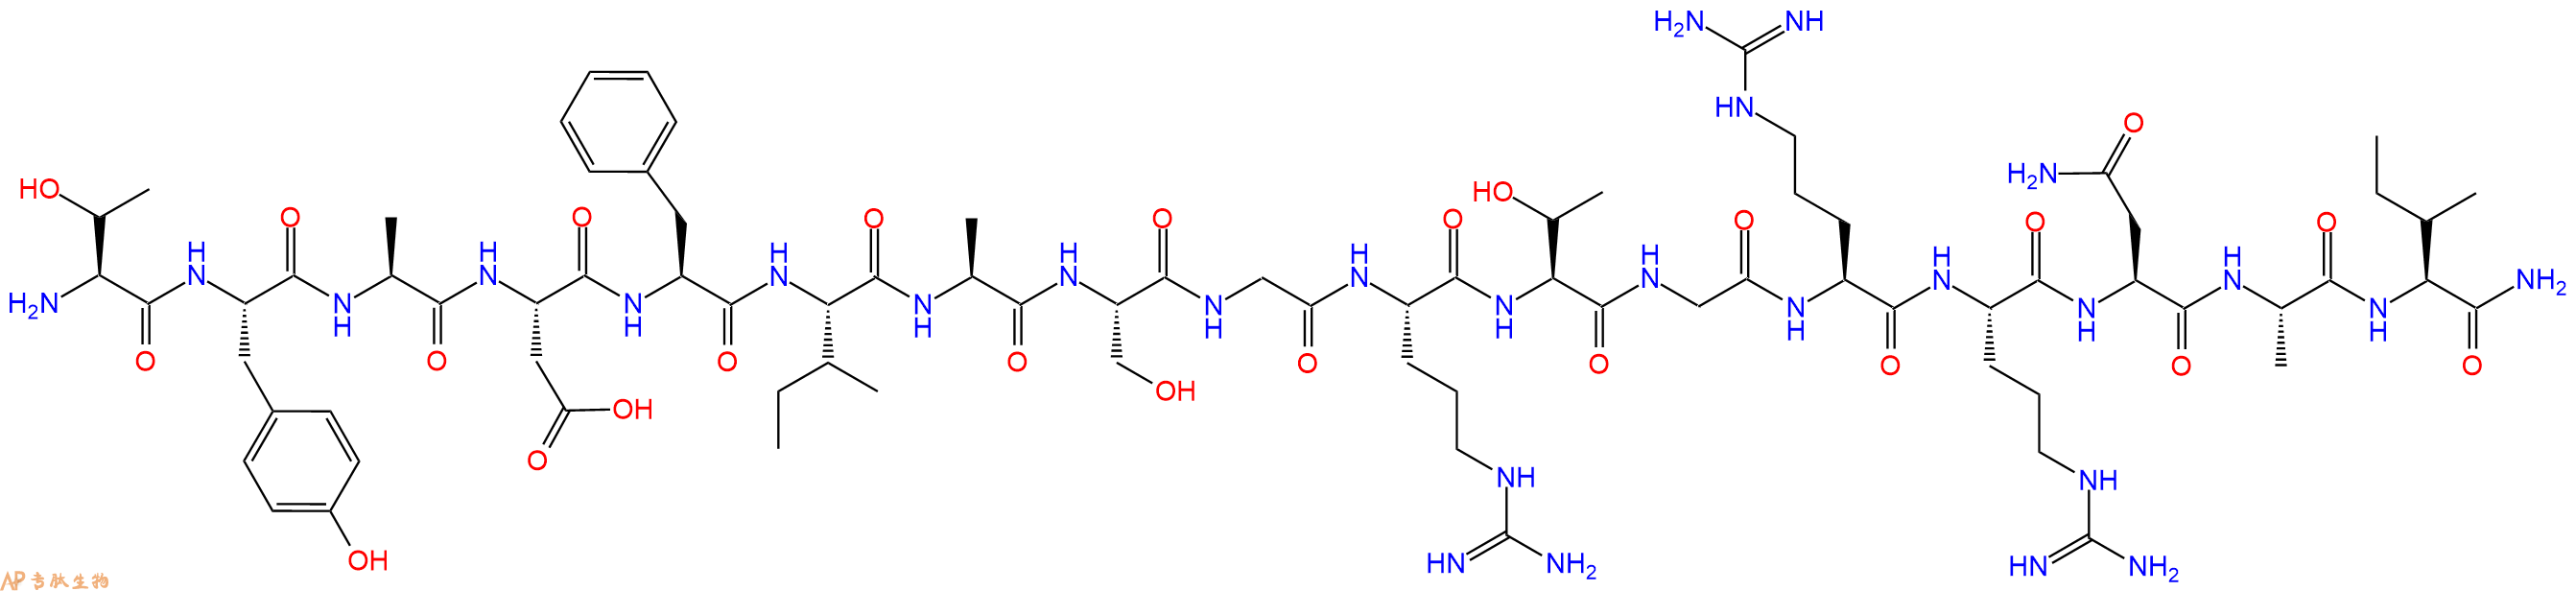 专肽生物产品蛋白激酶A抑制剂 Protein Kinase A Inhibitor (6-22), amide121932-06-7